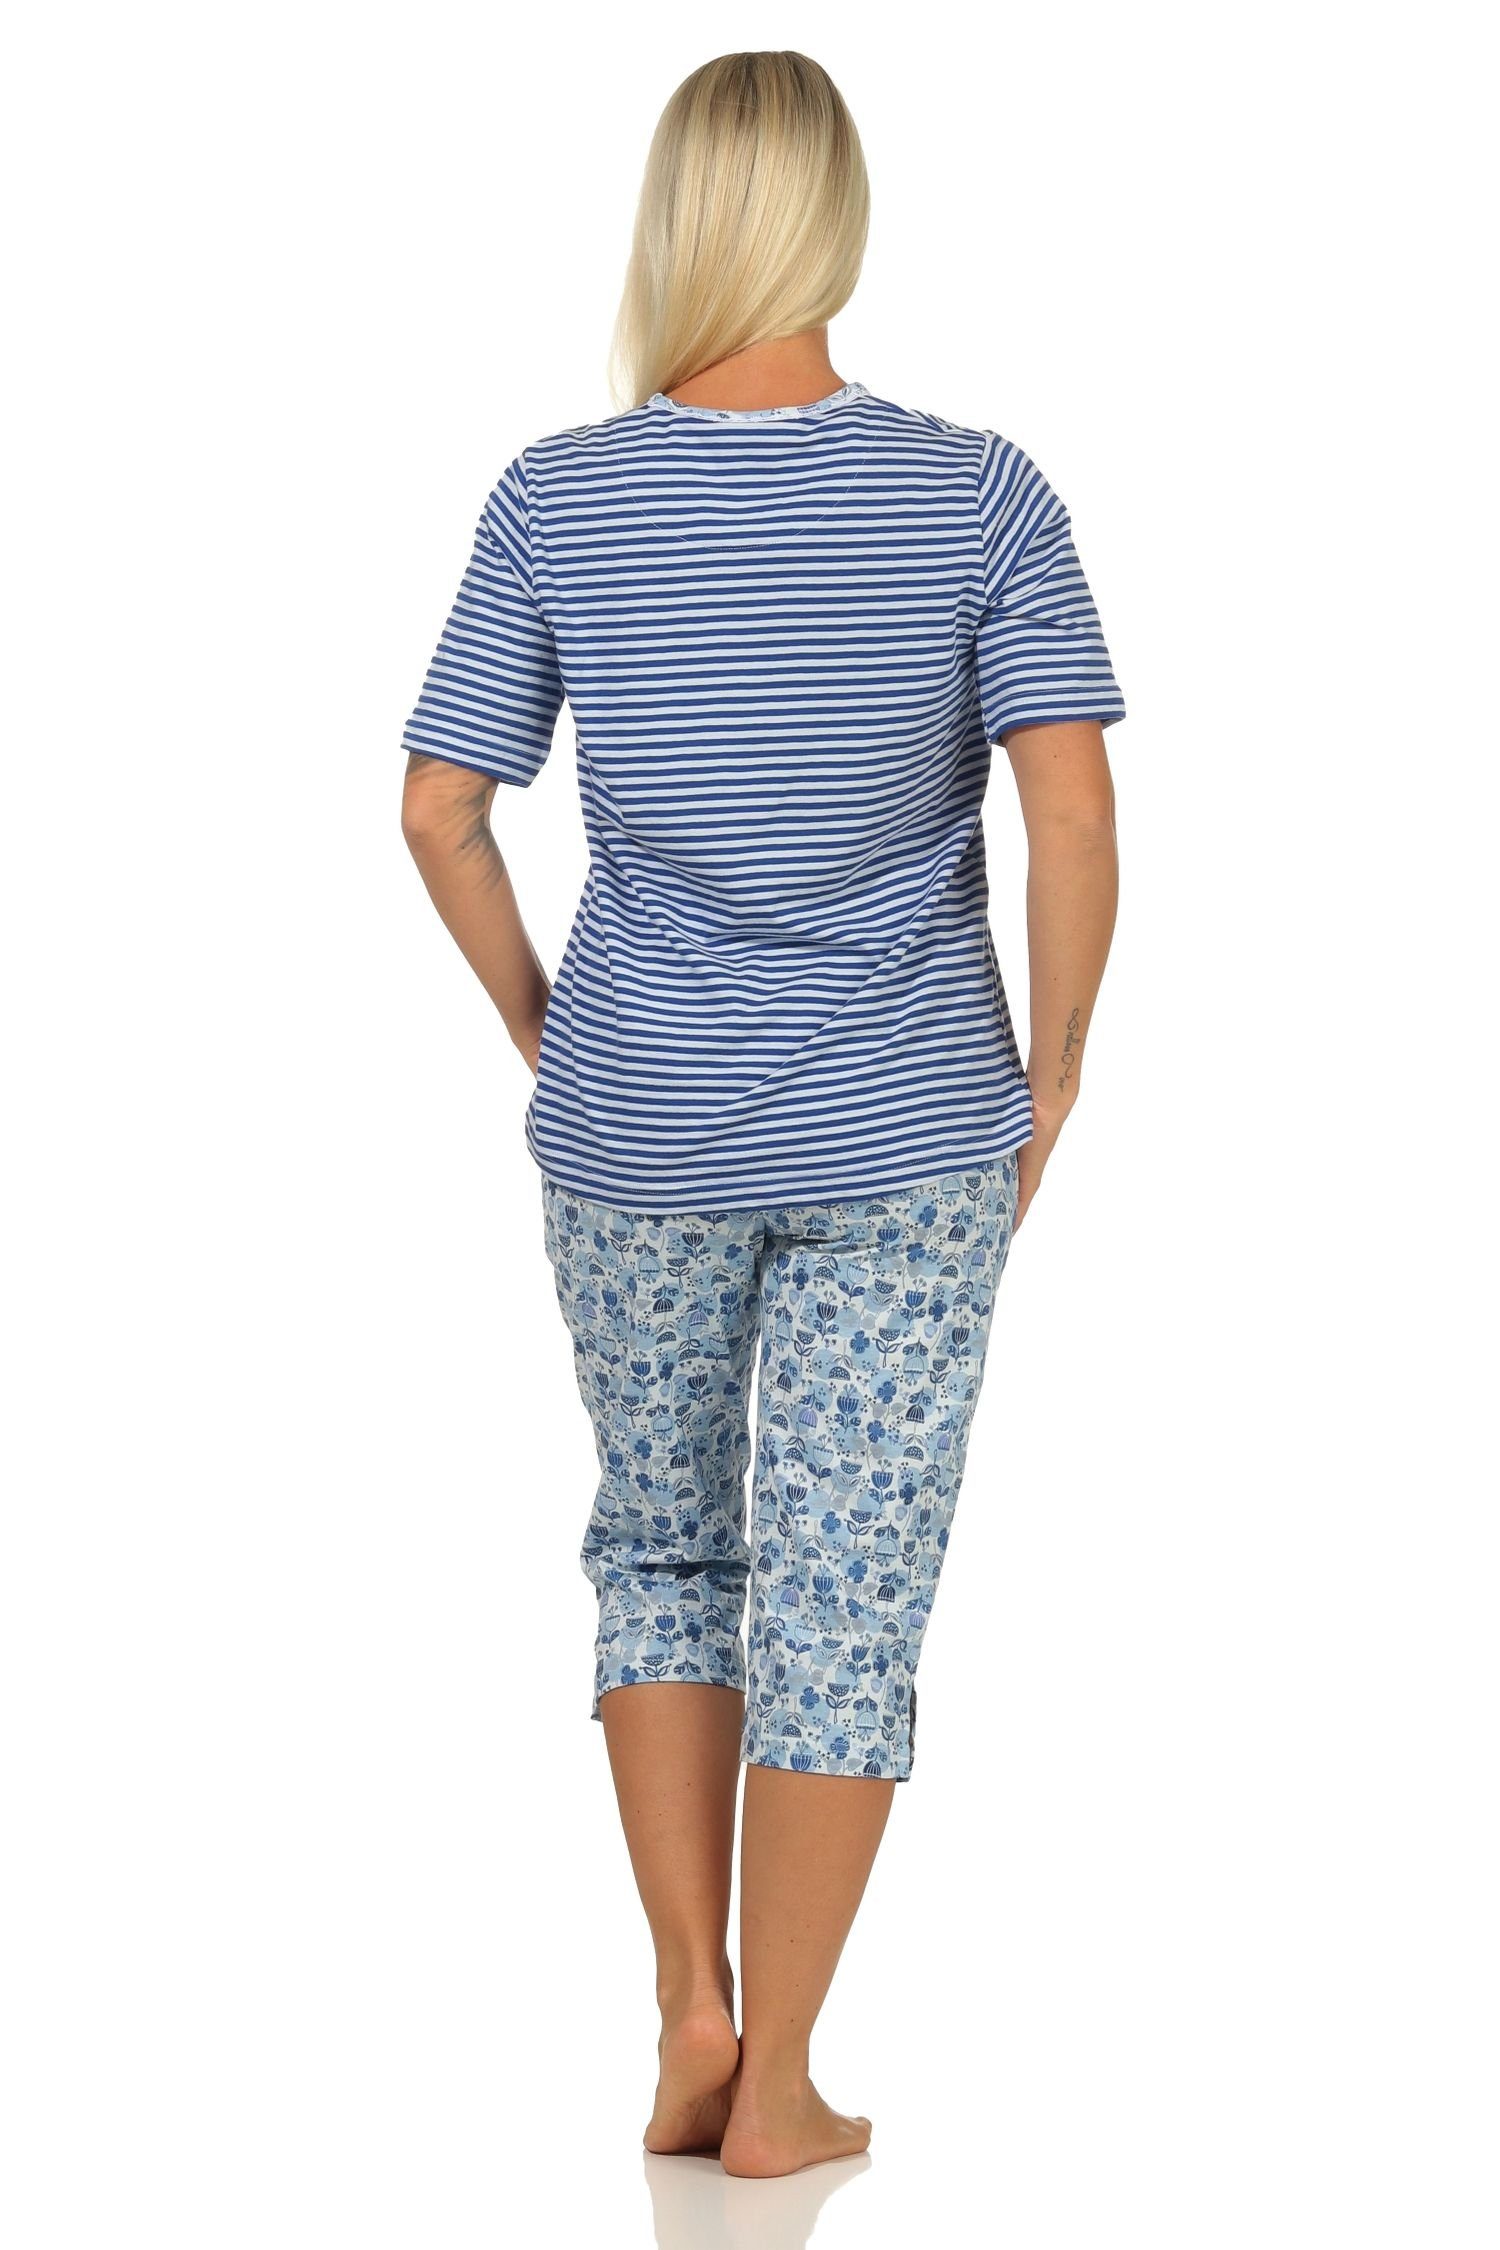 Spitzenbesatz Damen in Normann Capri - Schlafanzug hellblau mit auch Übergrößen Pyjama